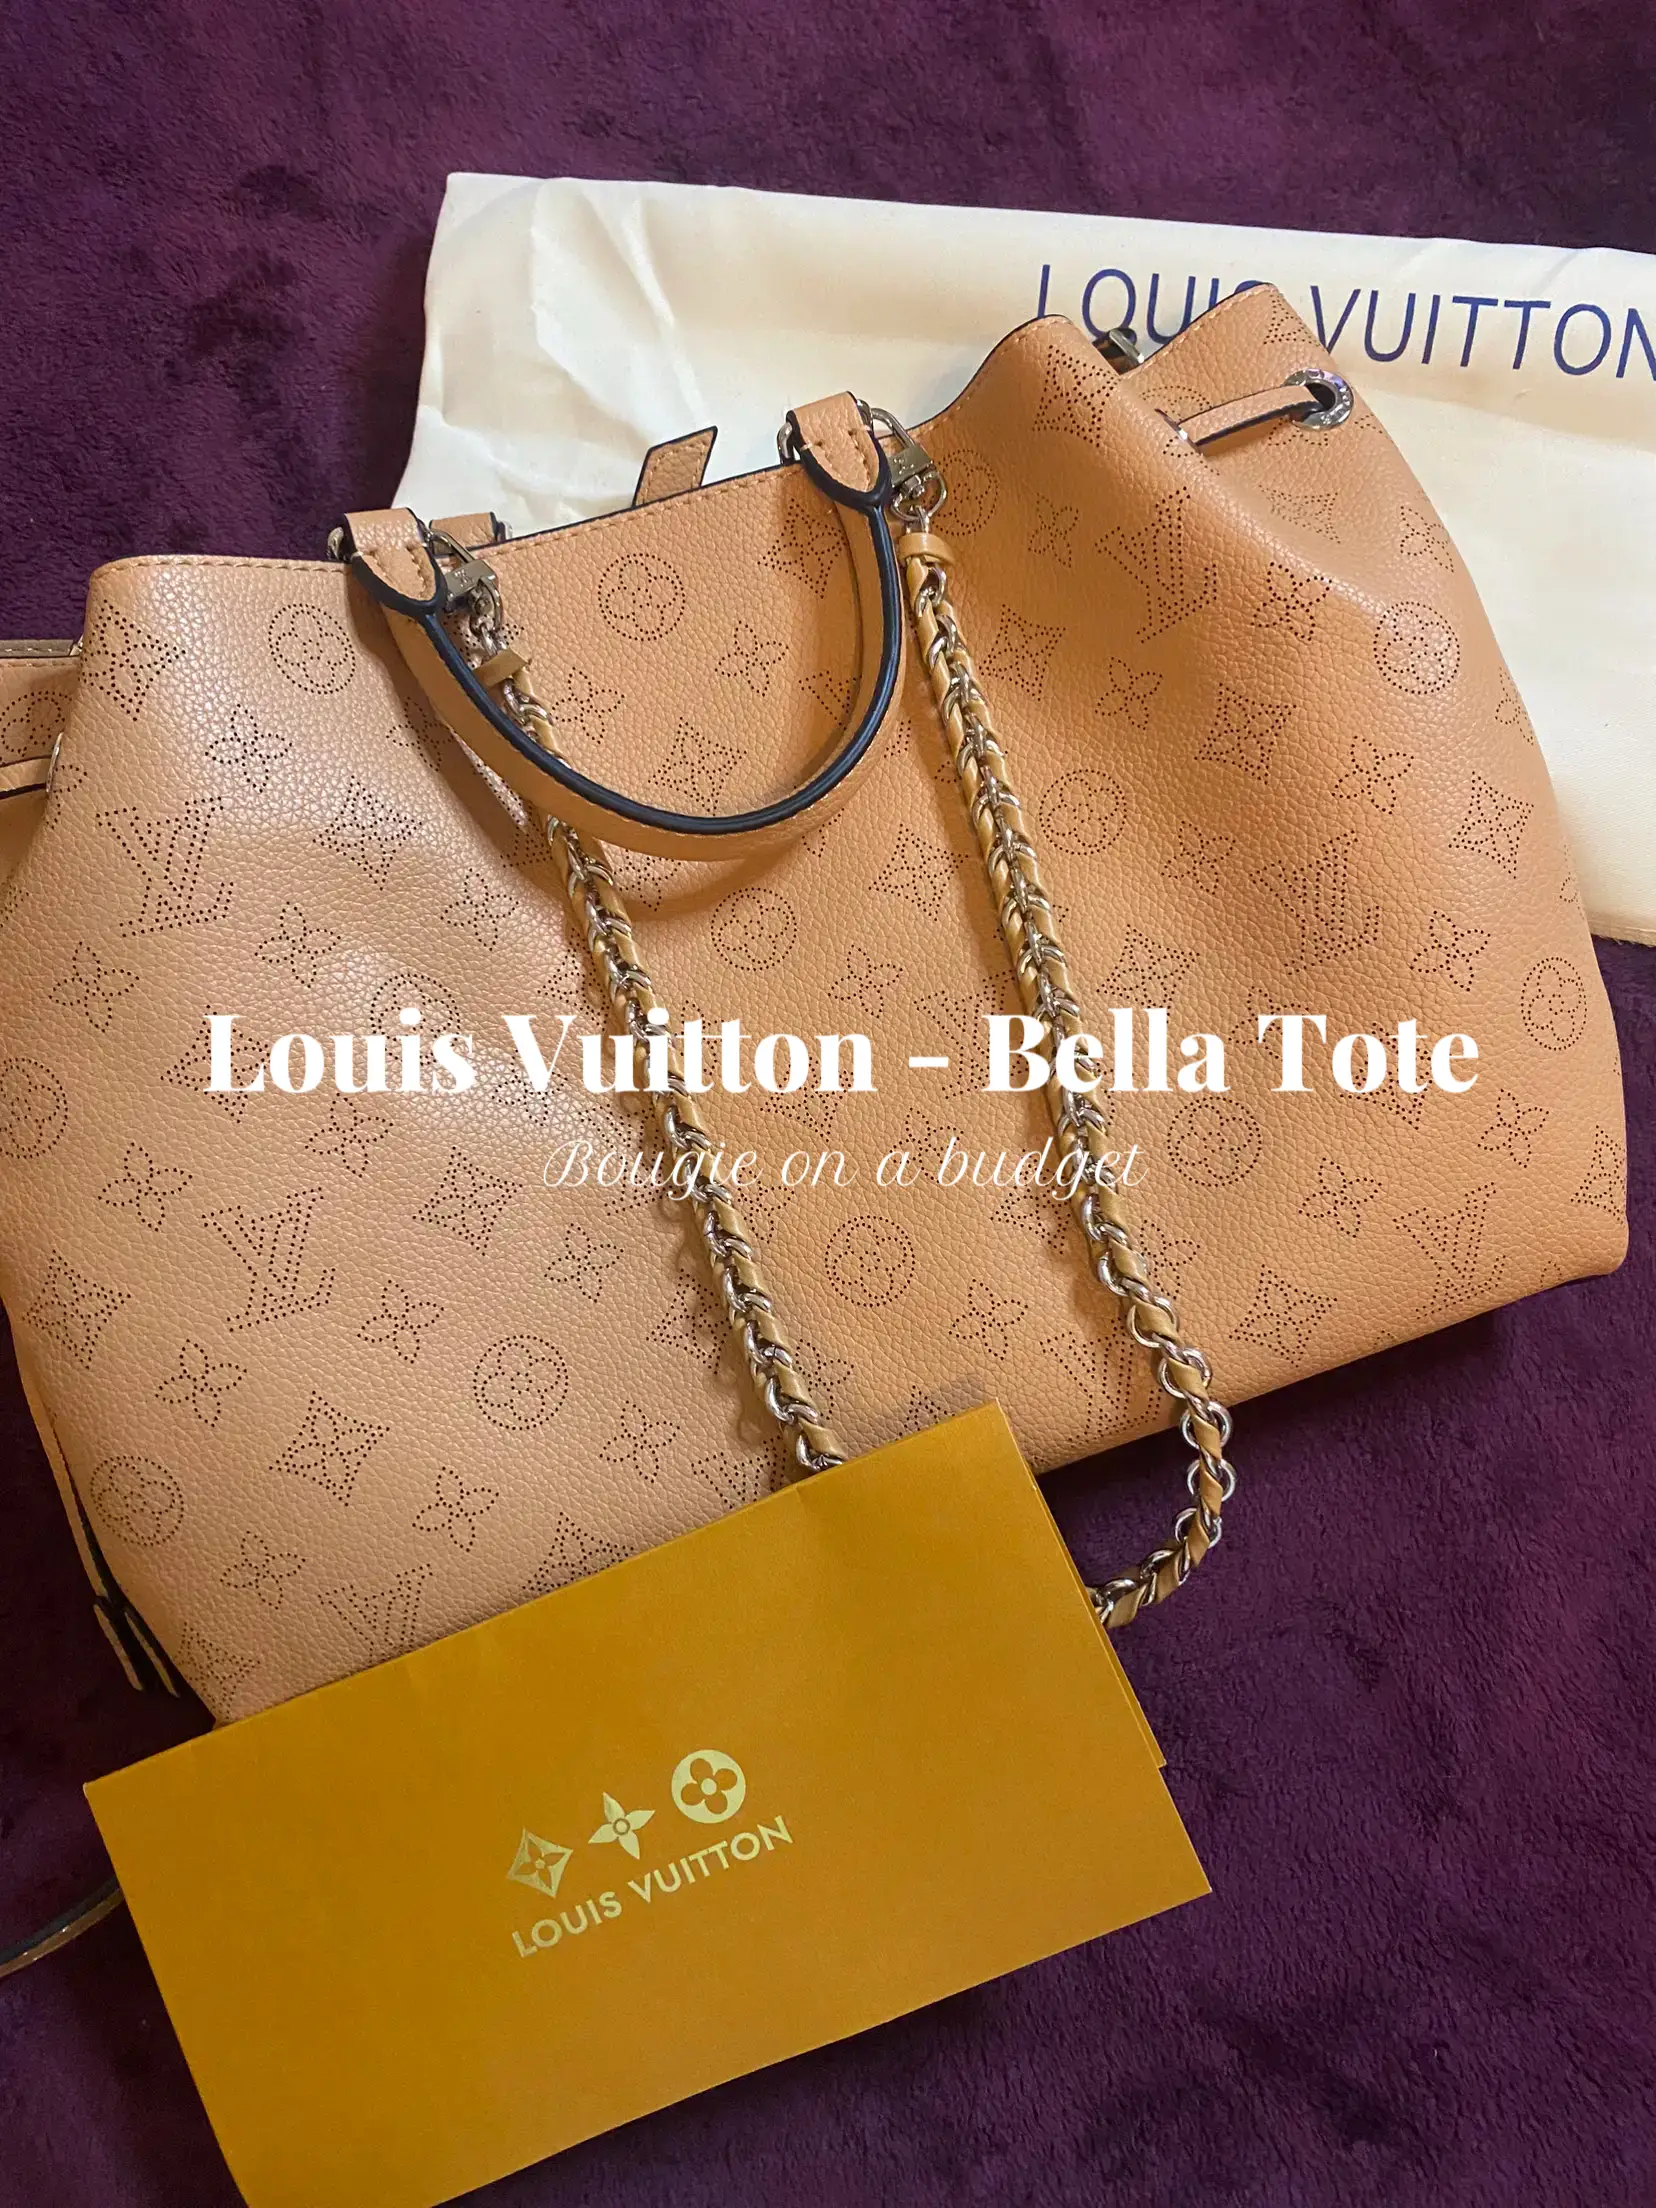 DHGATE Bella Tote Louis Vuitton 😍